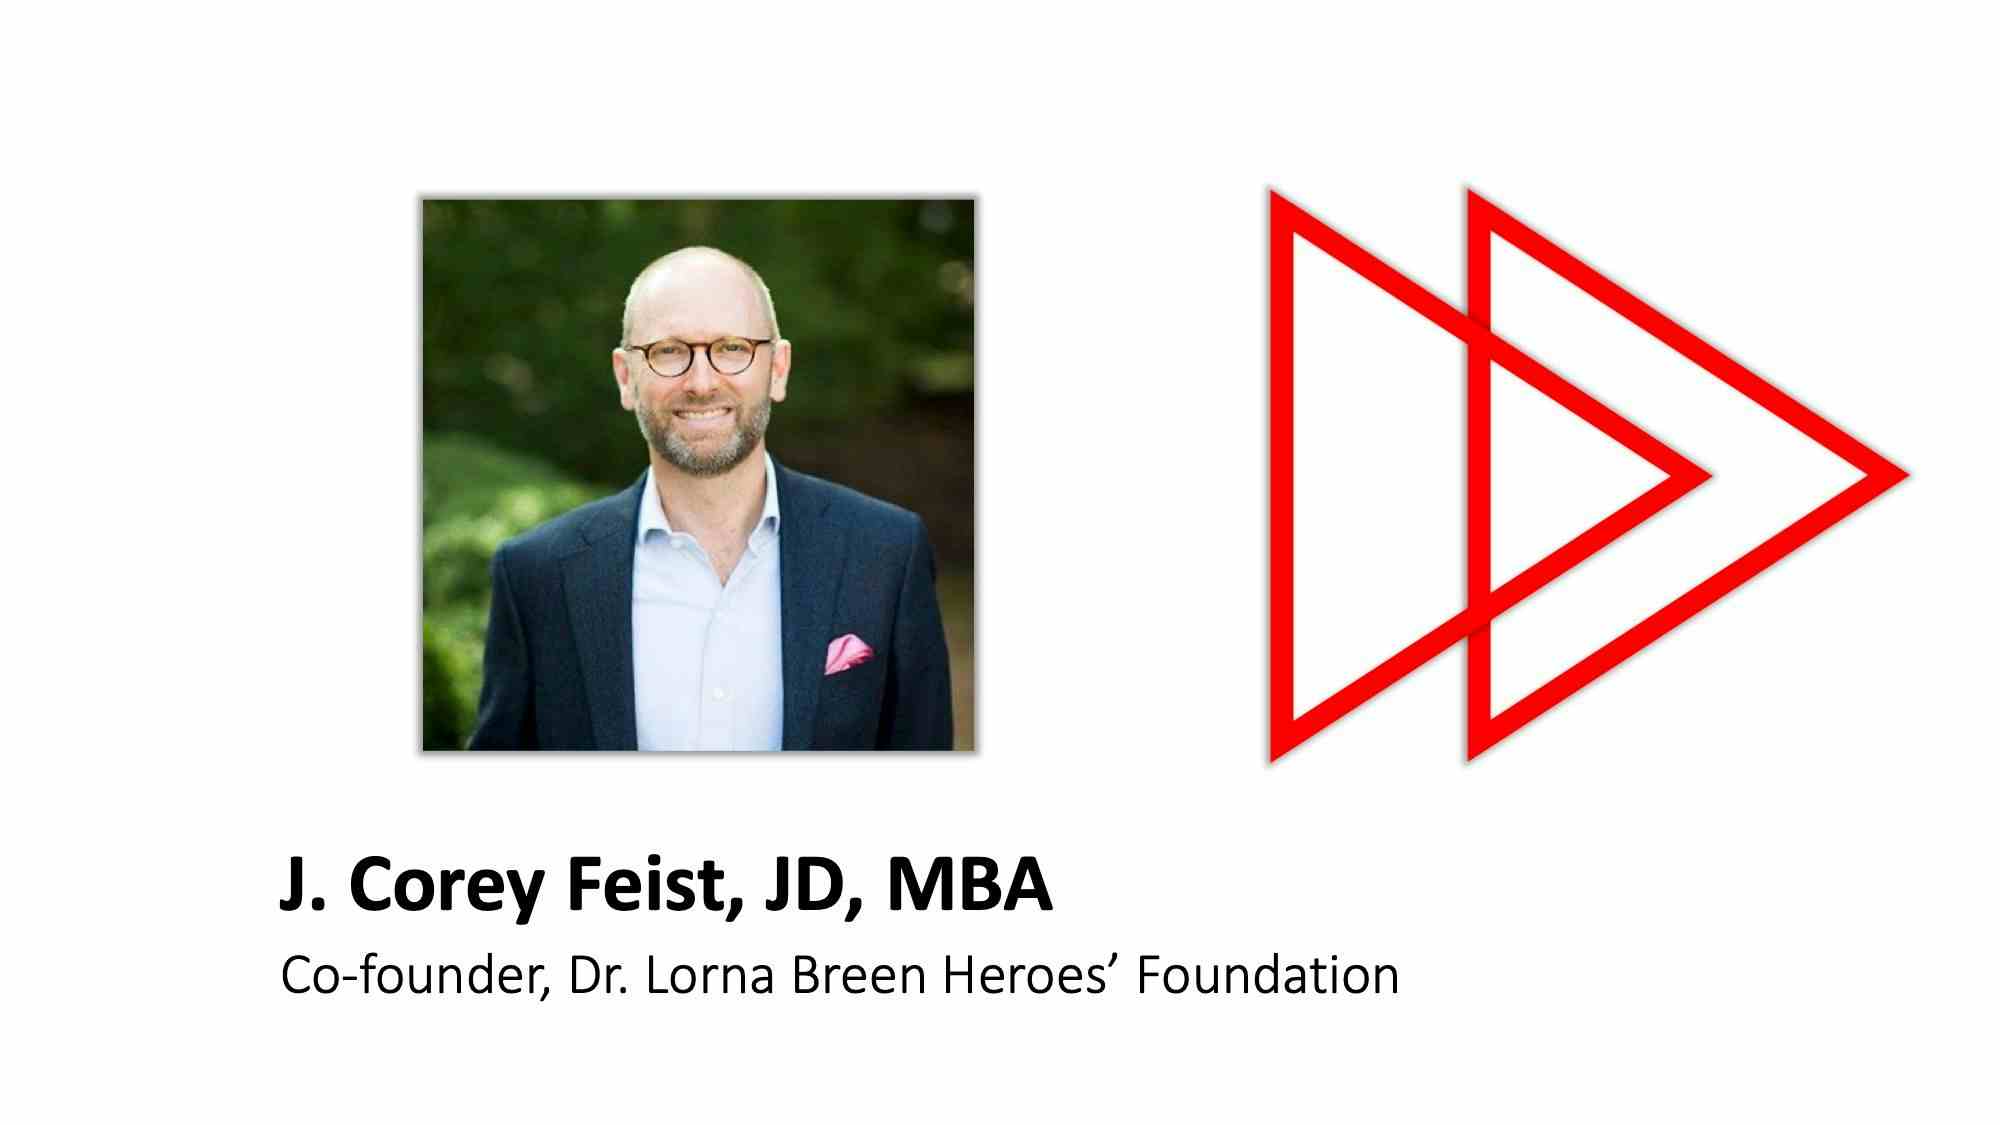 J. Corey Feist, JD, MBA, gives expert advice